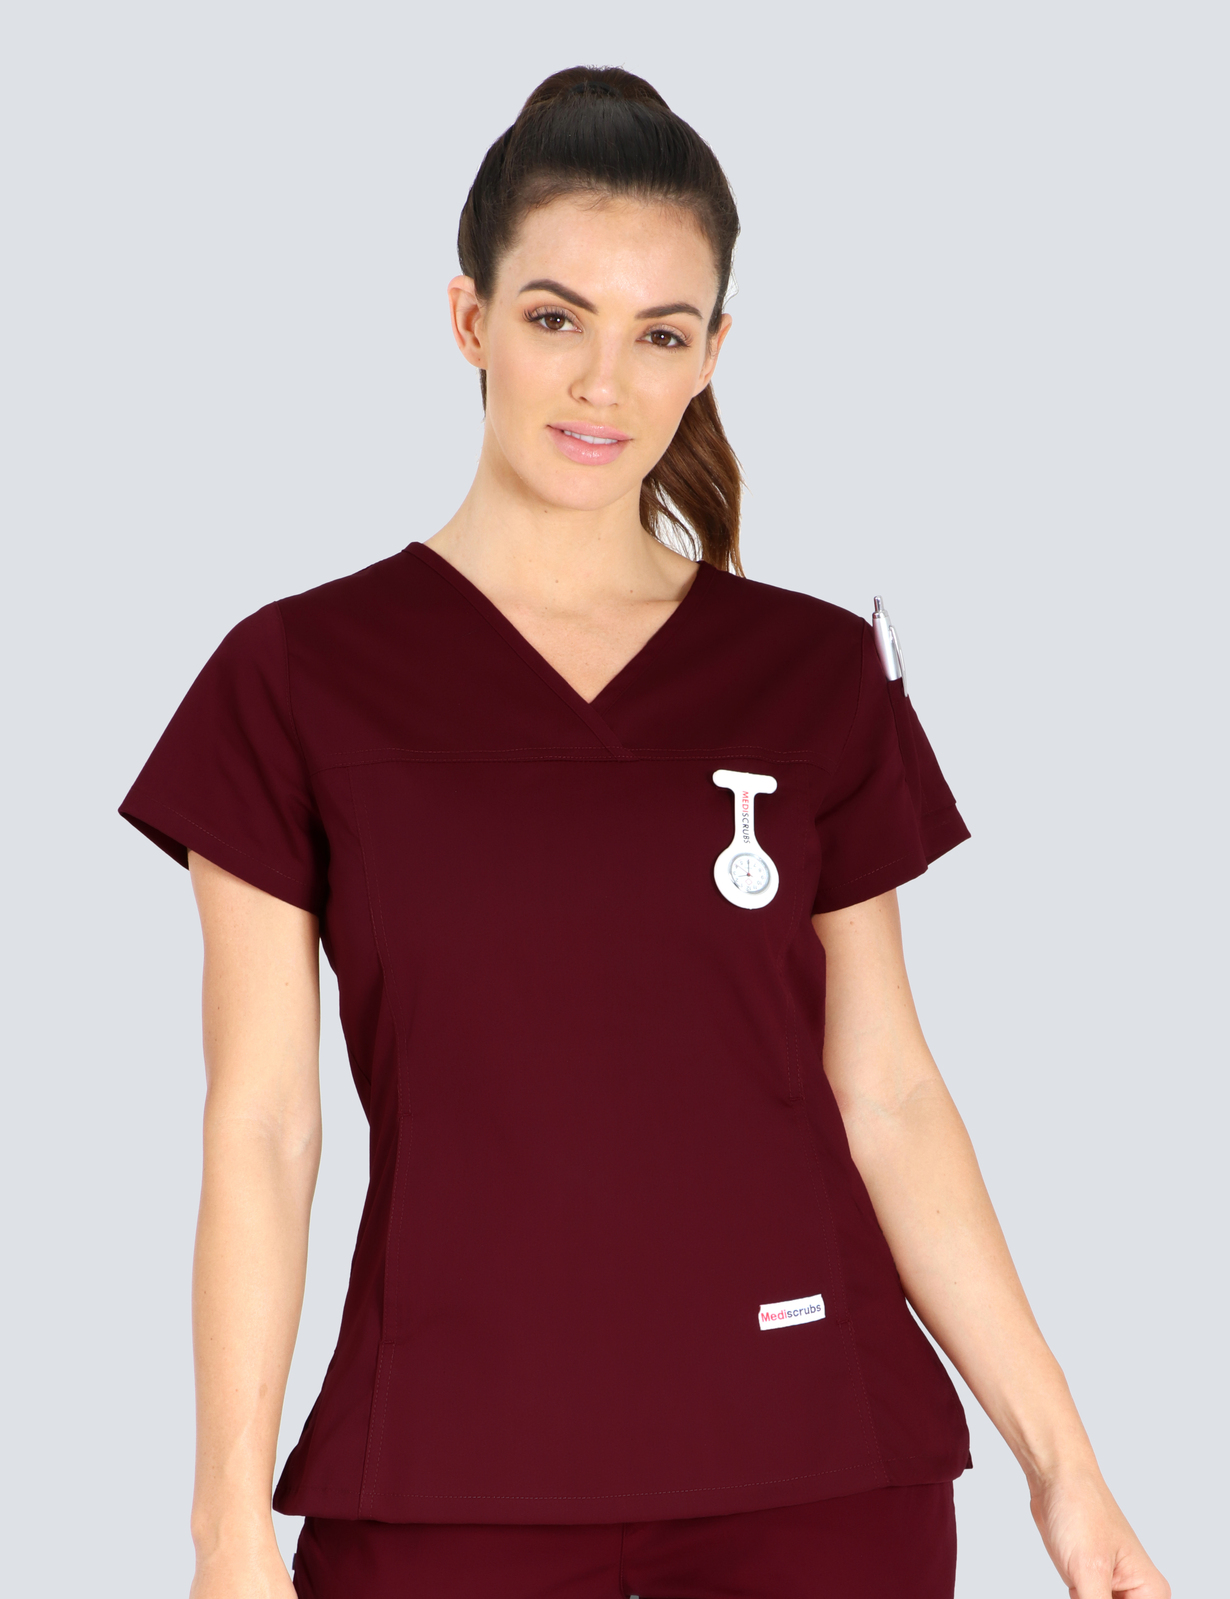 Queensland Children's Hospital Emergency Department Assistant in Nursing  Uniform Top Bundle  (Women's Fit Top in Burgundy incl Logos)